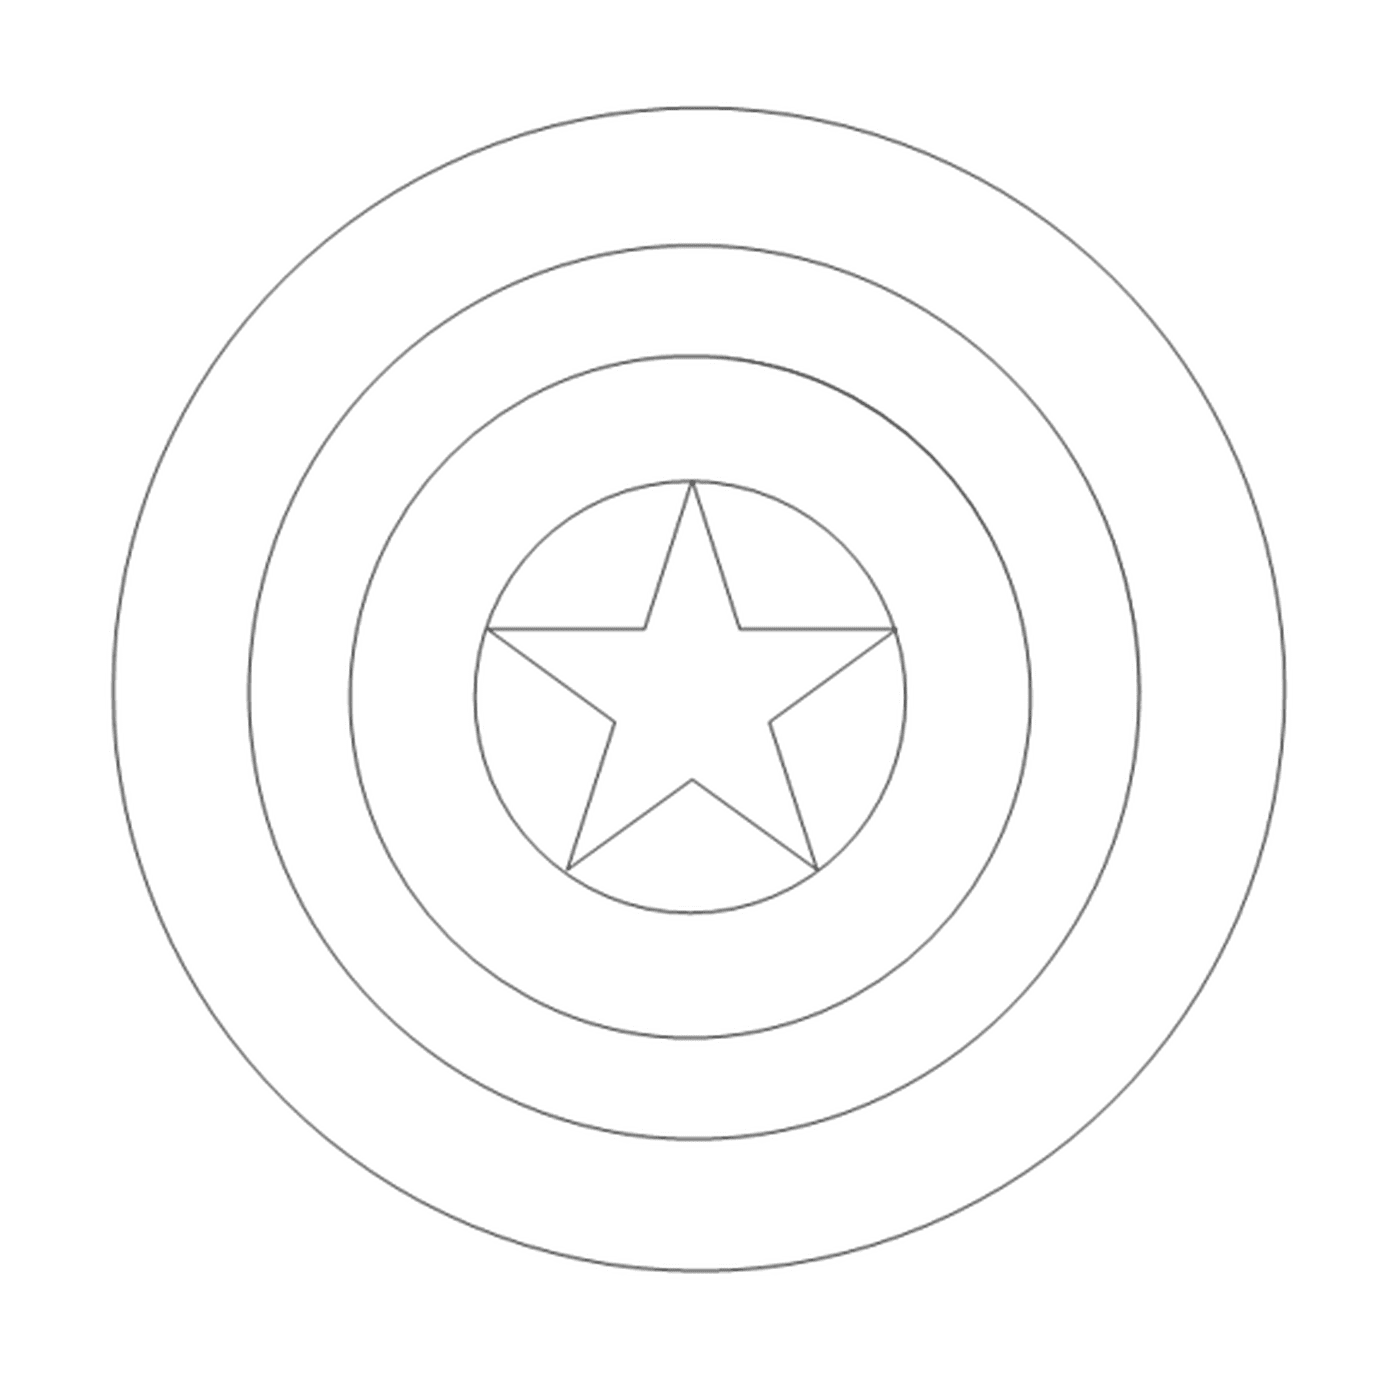   Une étoile au centre d'un cercle 